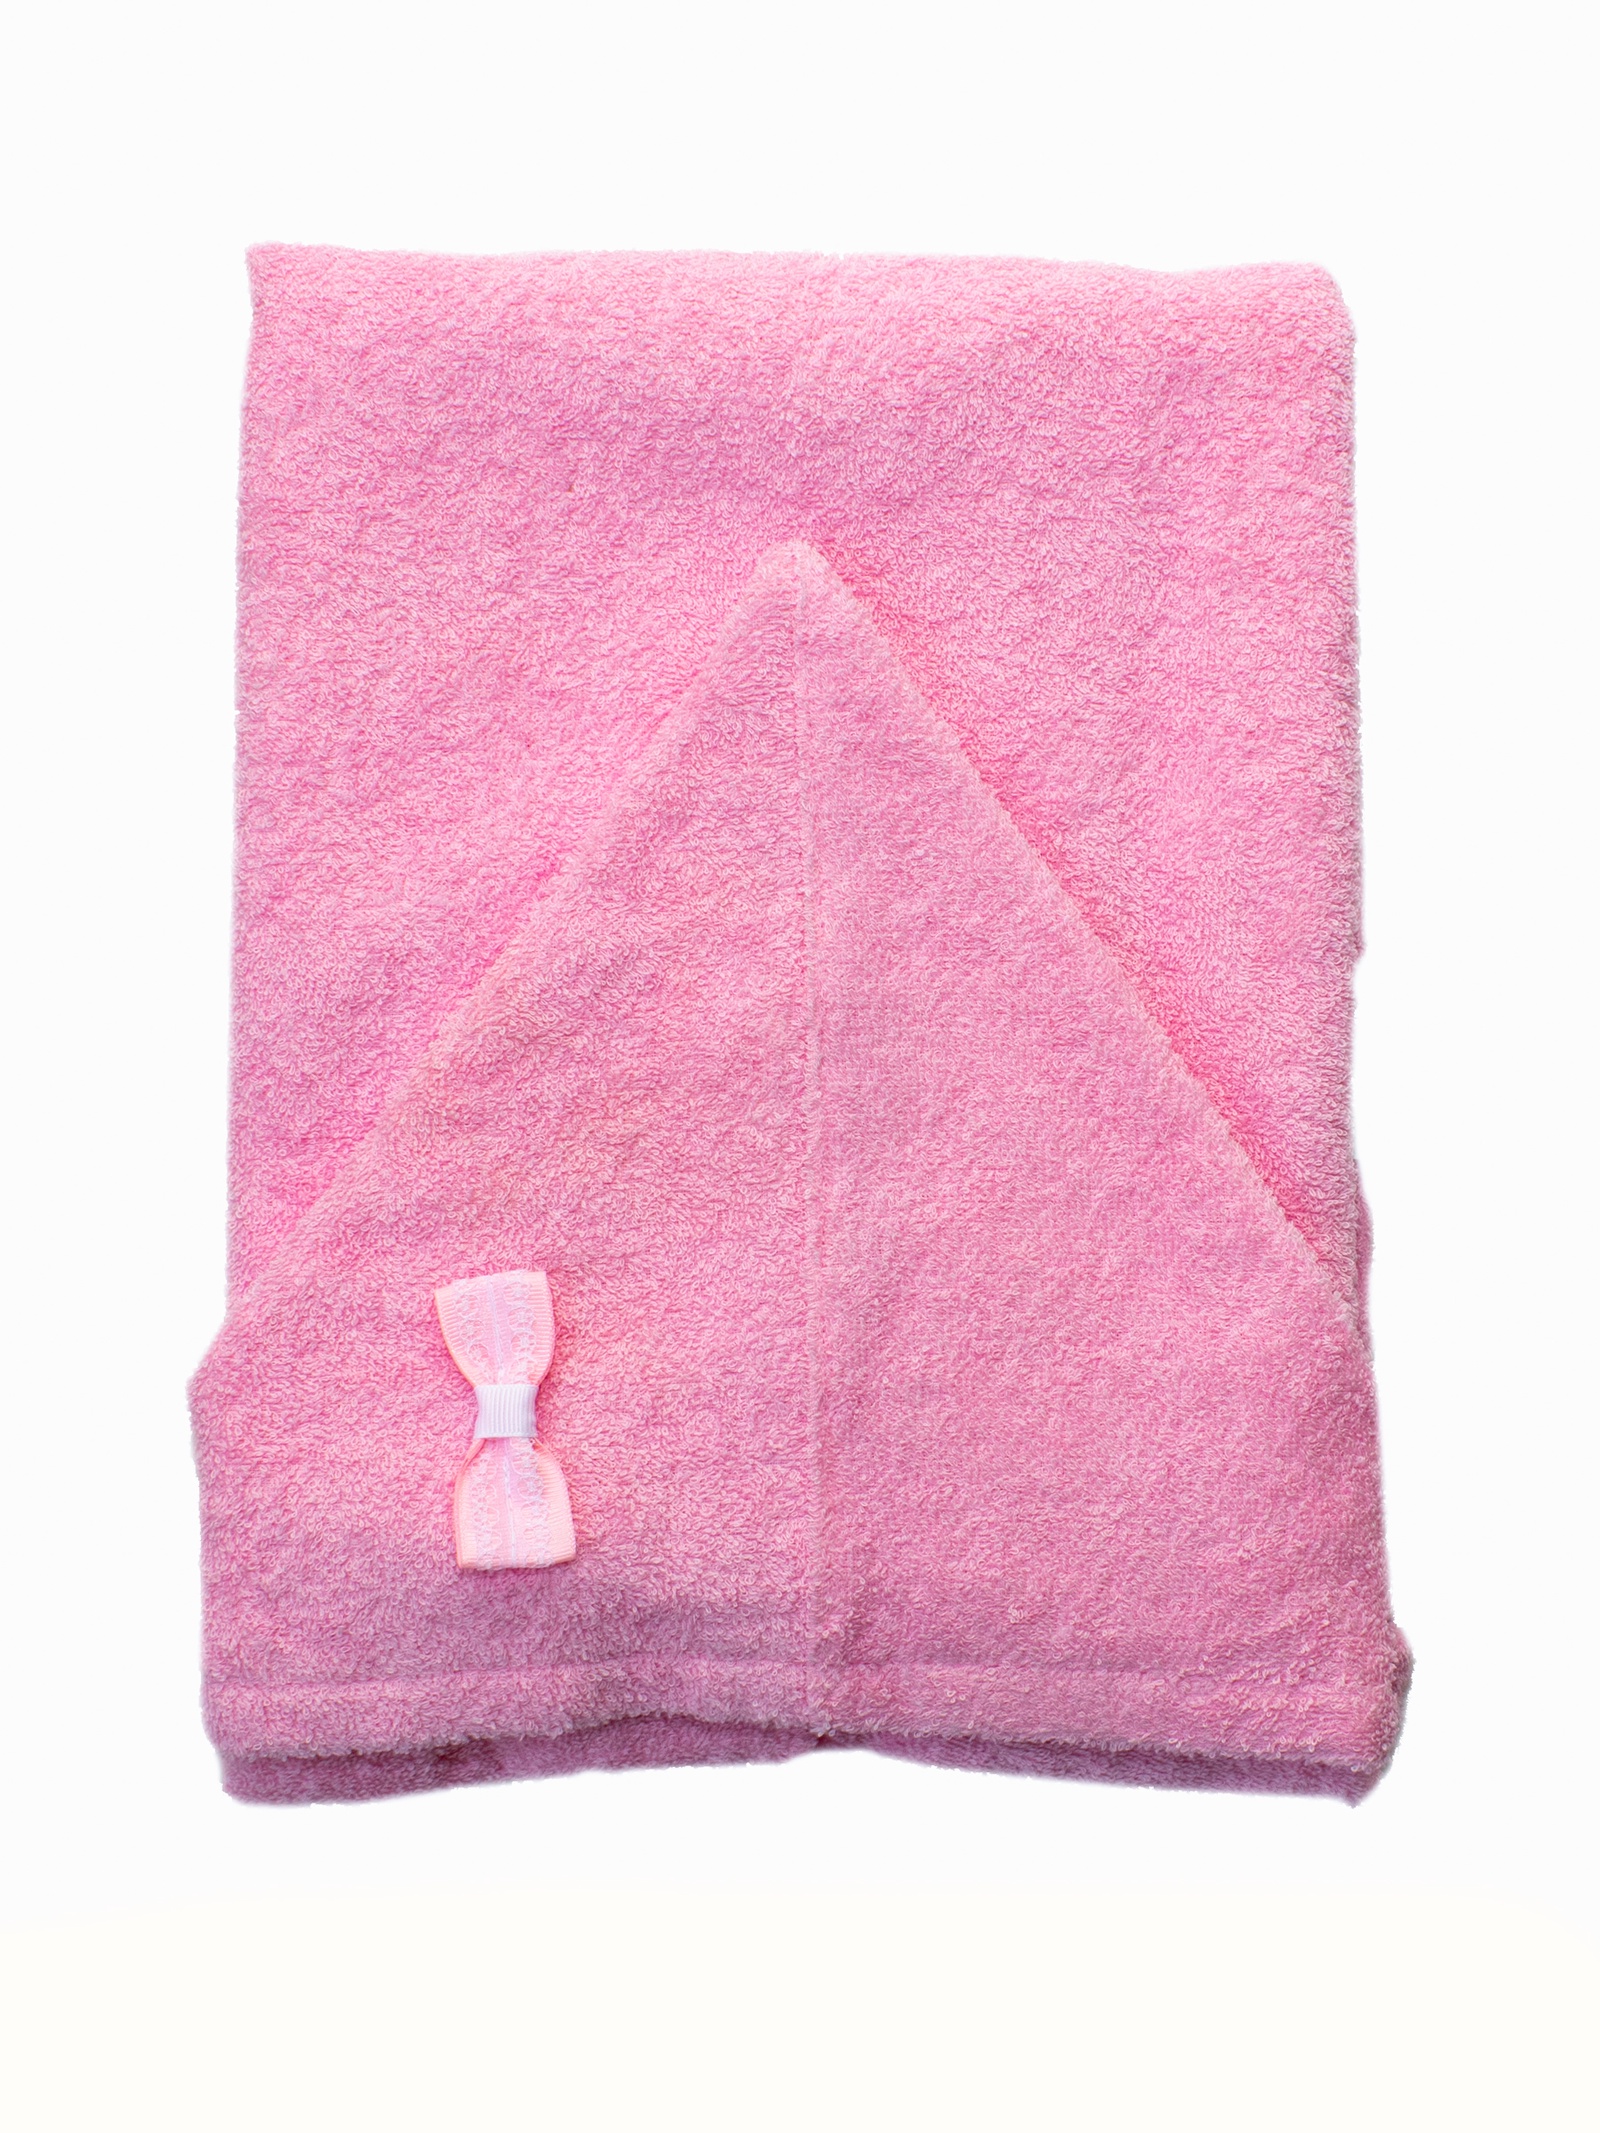 Полотенца basic. Розовое полотенце. Вискозные полотенца для новорожденных. Розовое полотенце Baby. H&M детская розовое  полотенце.